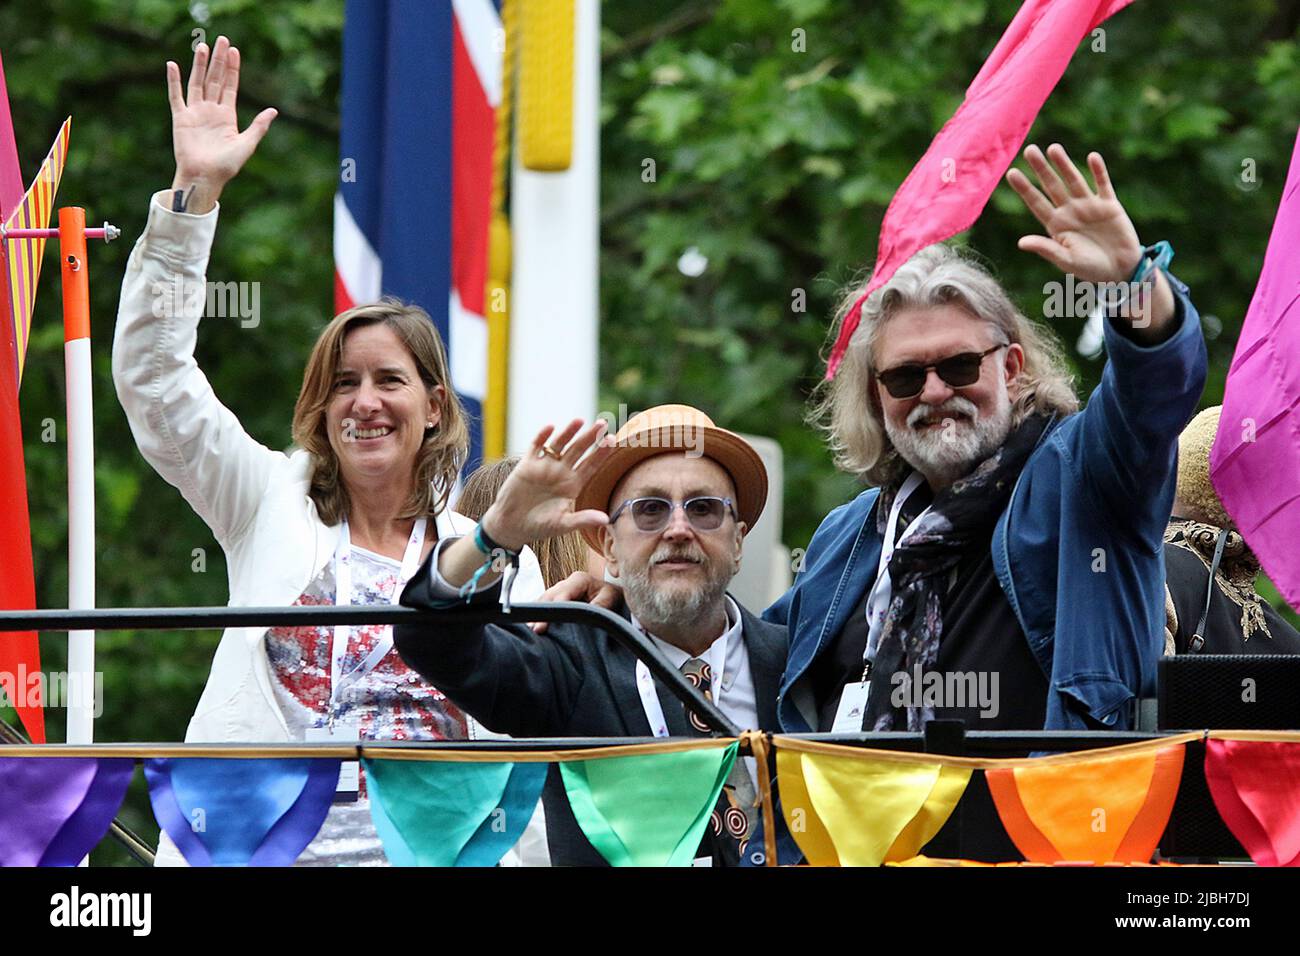 (De gauche à droite) Dame Katherine Jane Grainger est une ancienne gagnante de médaille d'or britannique. David ( Dave ) Myers et si King sont des chefs anglais célèbres et des présentateurs TV, plus connus sous le nom de Hairy Bikers. Tous les trois étaient dans un bus à toit ouvert au Platinum Jubilee Pageant 2022 dans le Mall, Londres Banque D'Images